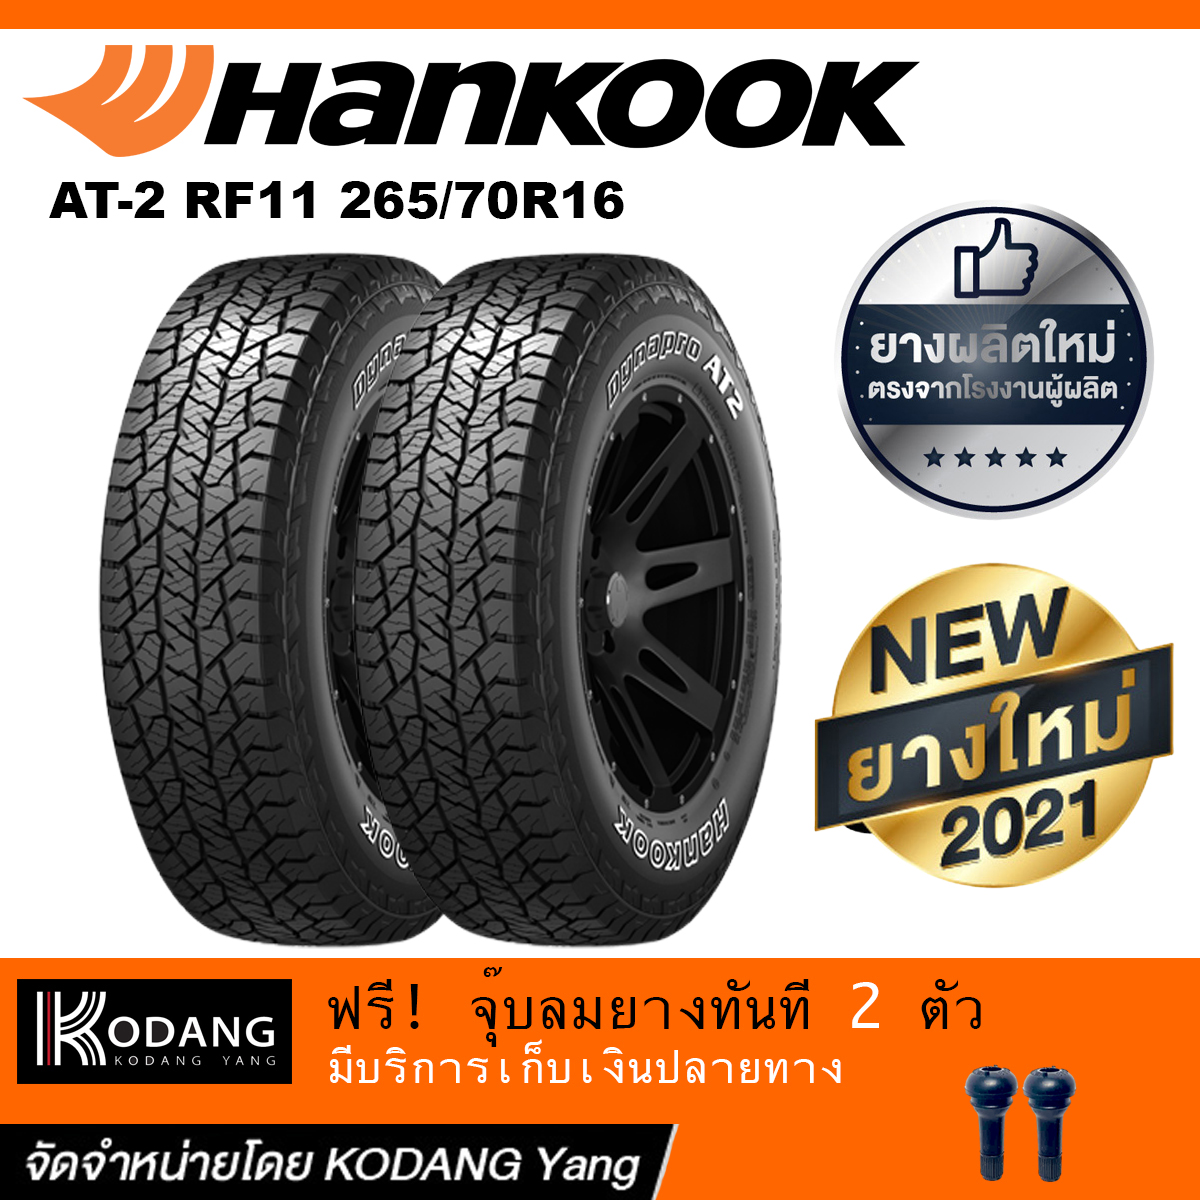 ยางรถยนต์ HANKOOK รุ่น AT-2 RF11 265/70R16  2เส้น 5,100 บาท ฟรี!จุ๊บลมยาง 2 ตัว